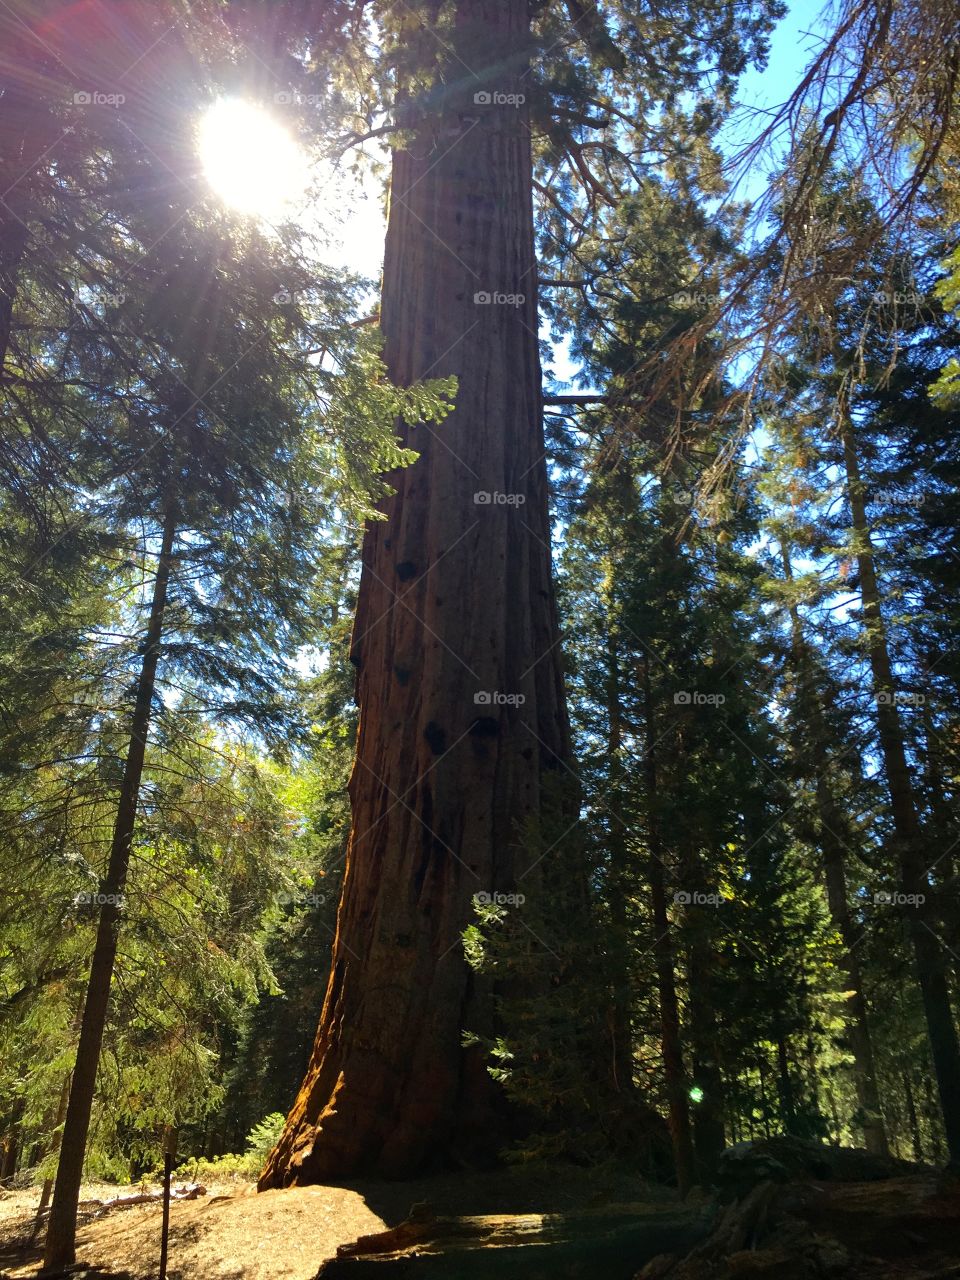 Sequoias in CA